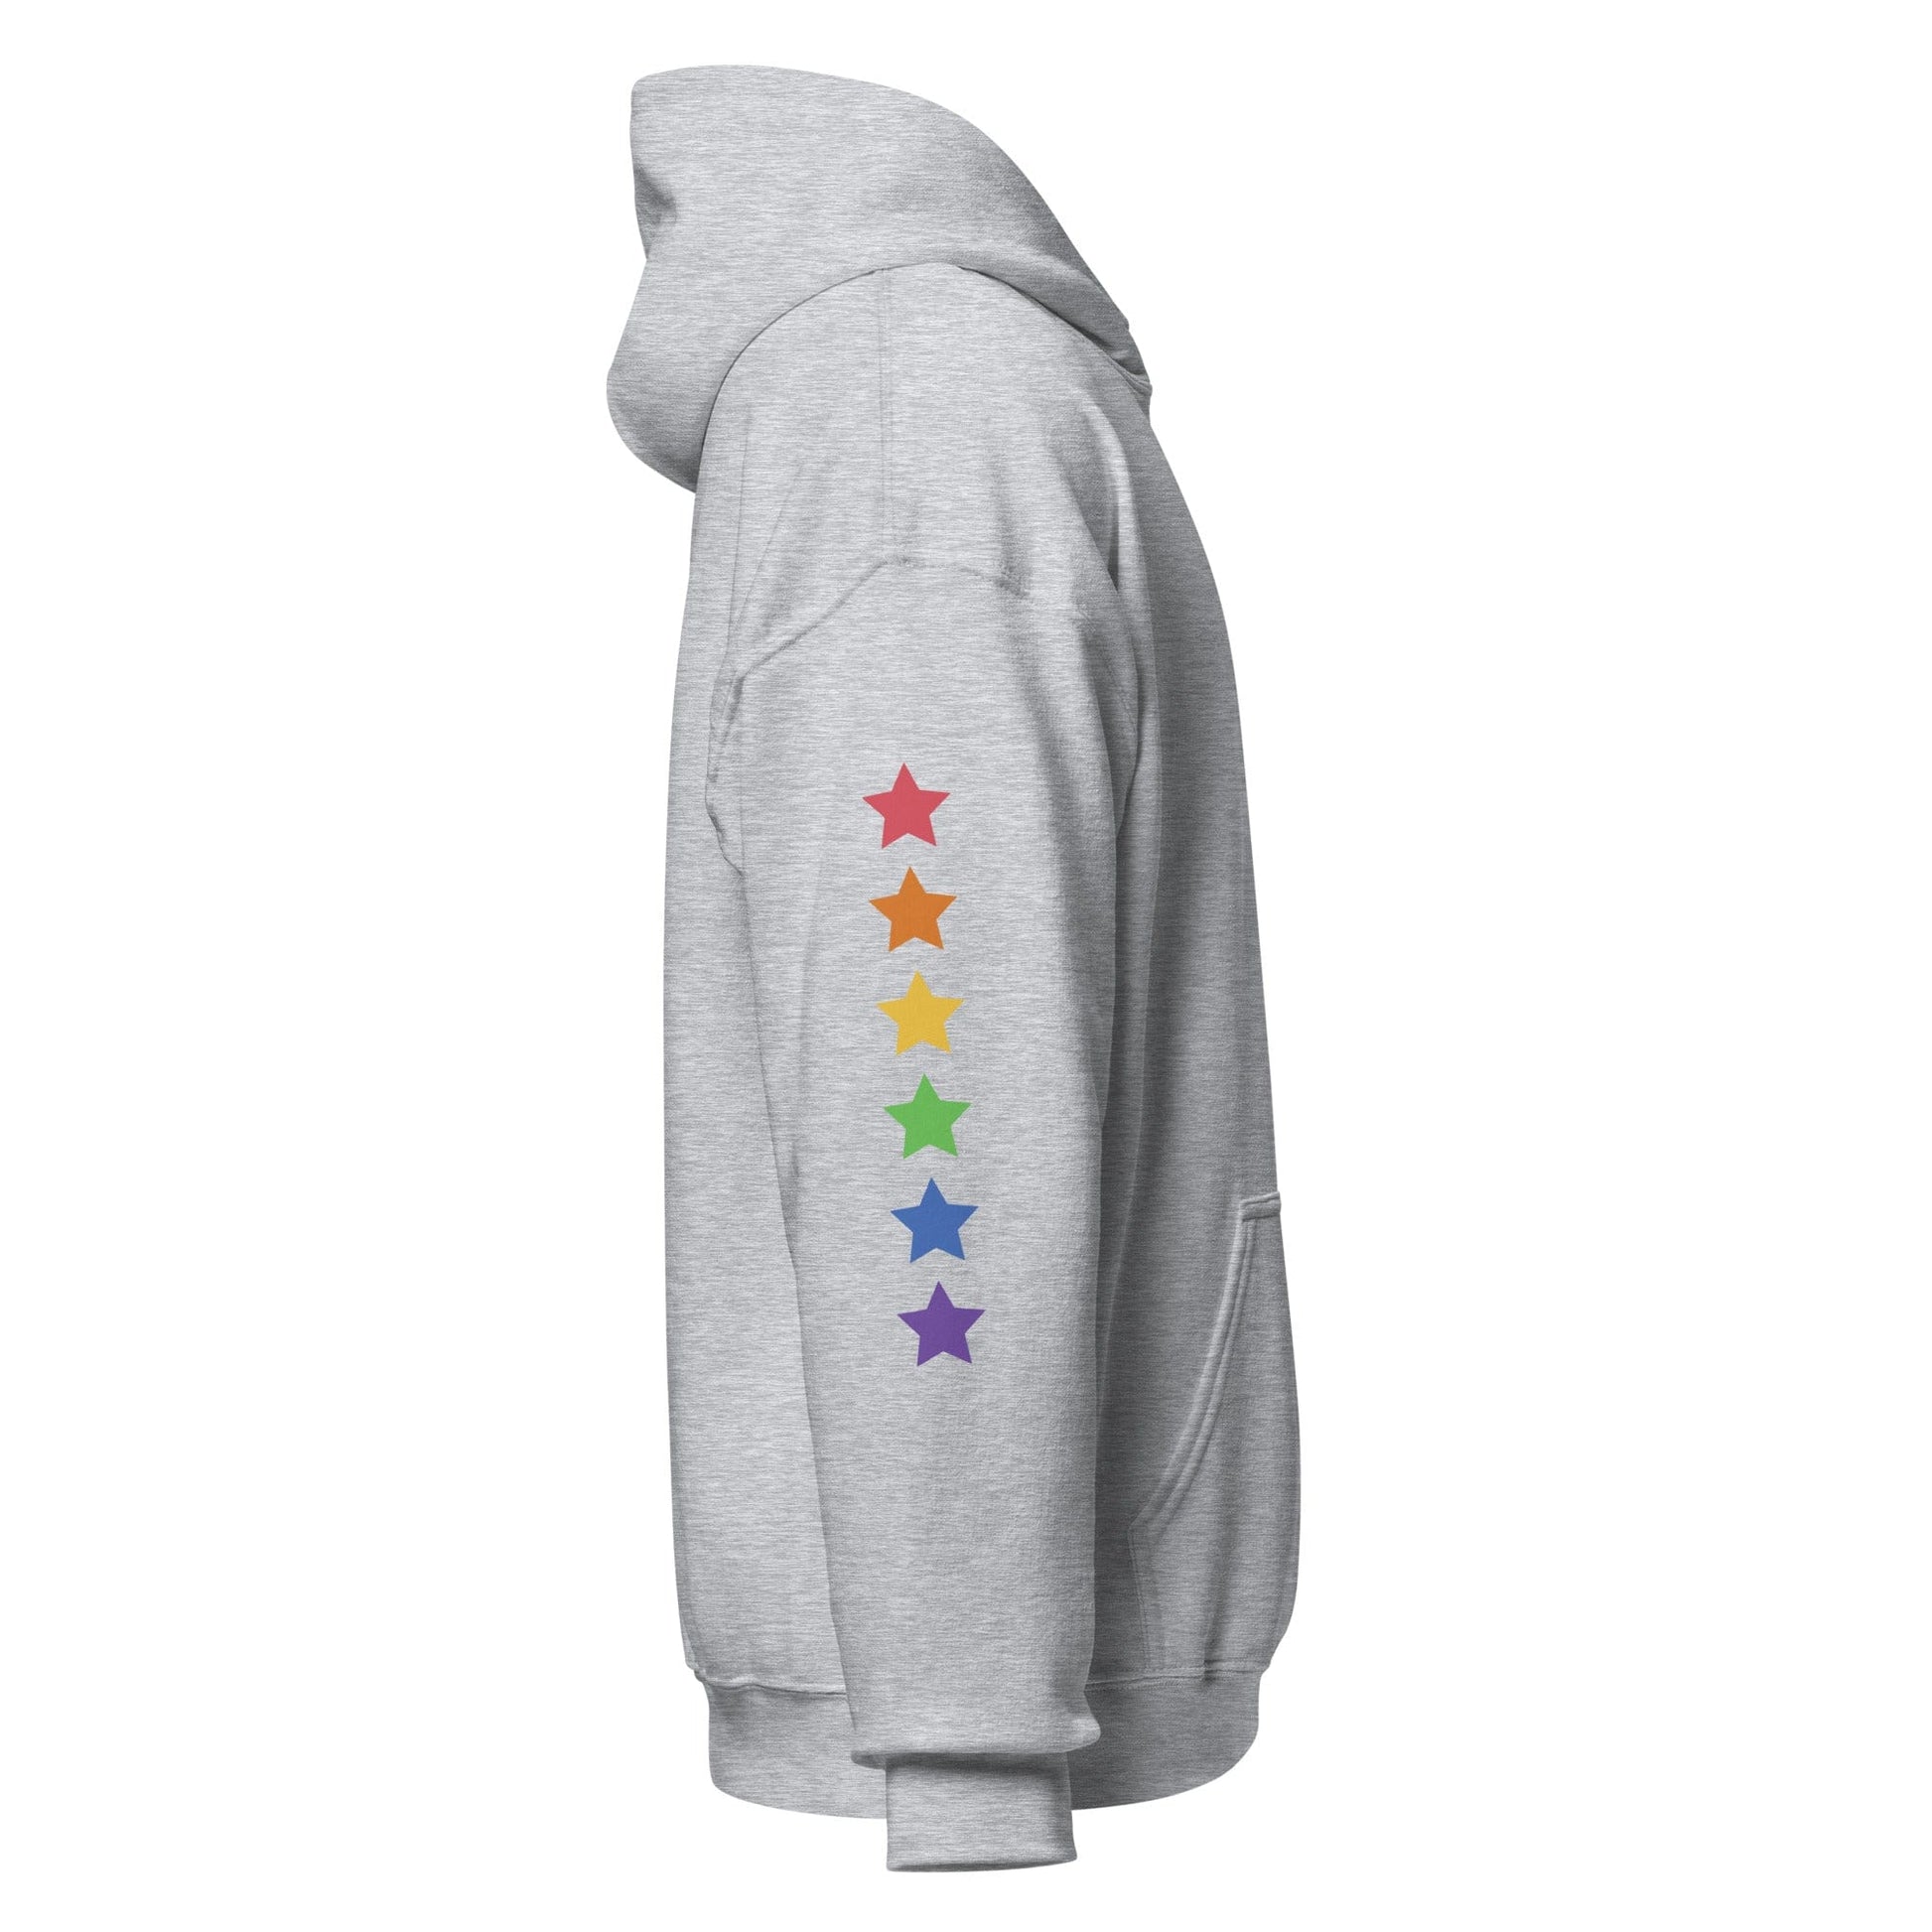 right-side-grey-genderless-stars-pride-hoodie-by-feminist-define